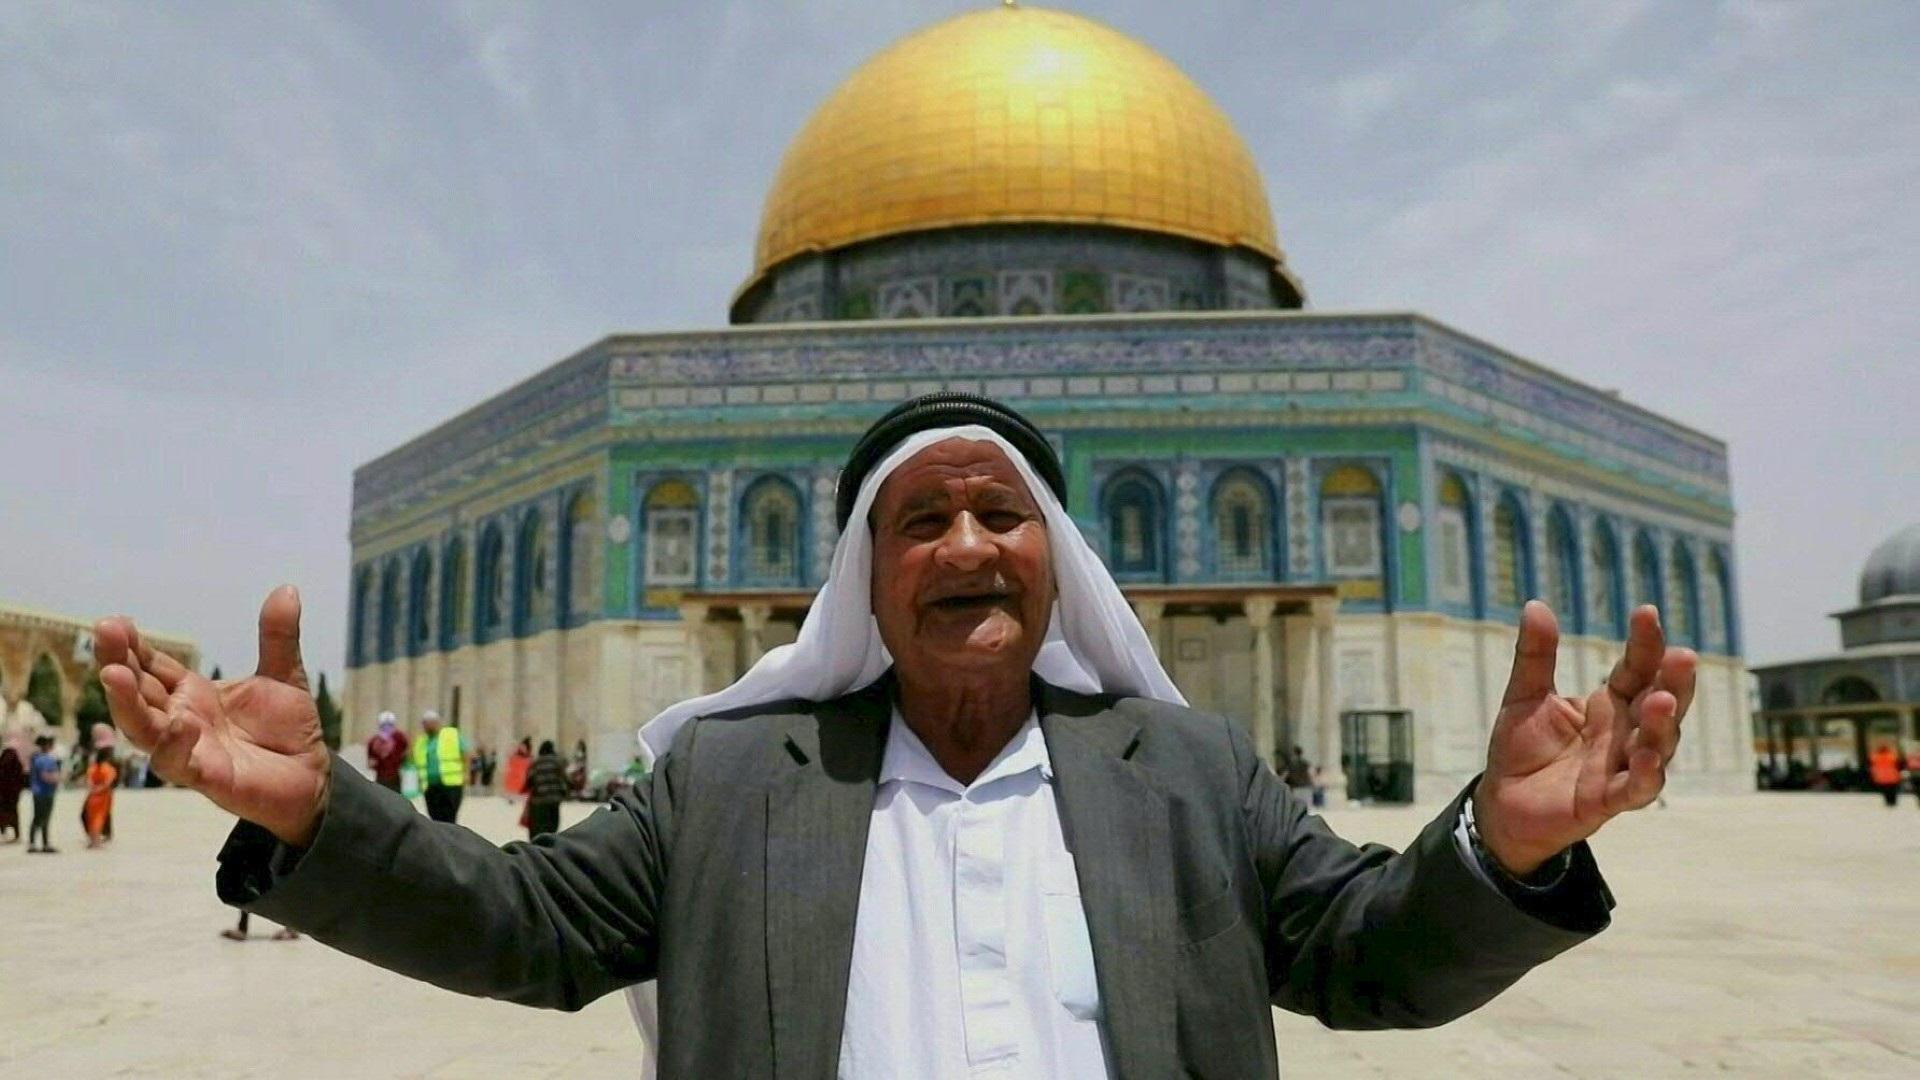 الأردن طالب إسرائيل باحترام حرمة المسجد الأقصى المبارك ومشاعر المسلمين، واحترام الوضع التاريخي والقانوني القائم في الحرم الشريف (أ ف ب)